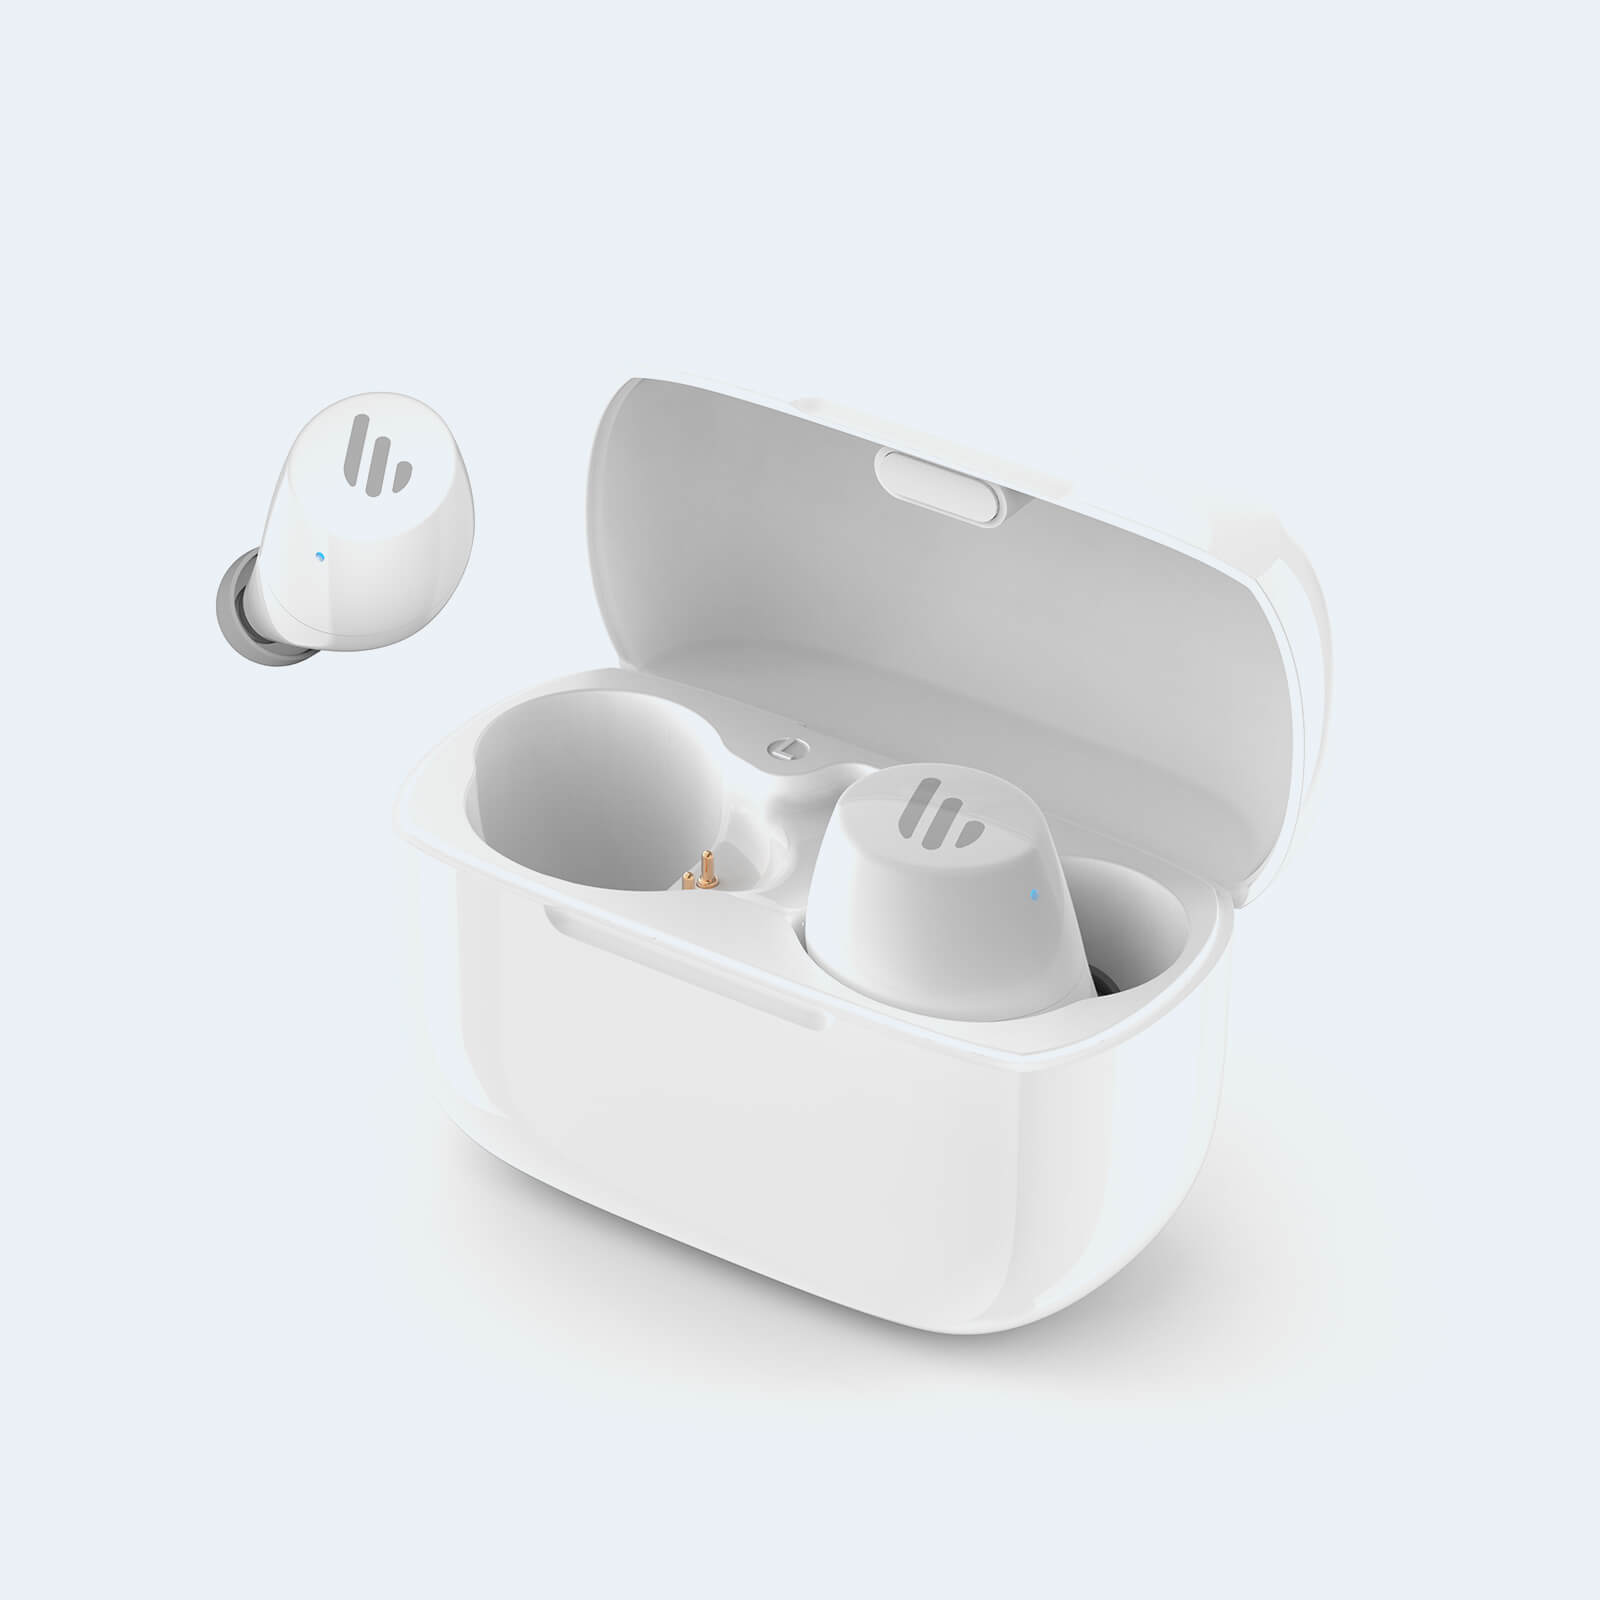 TWS1, los nuevo auriculares de Edifier